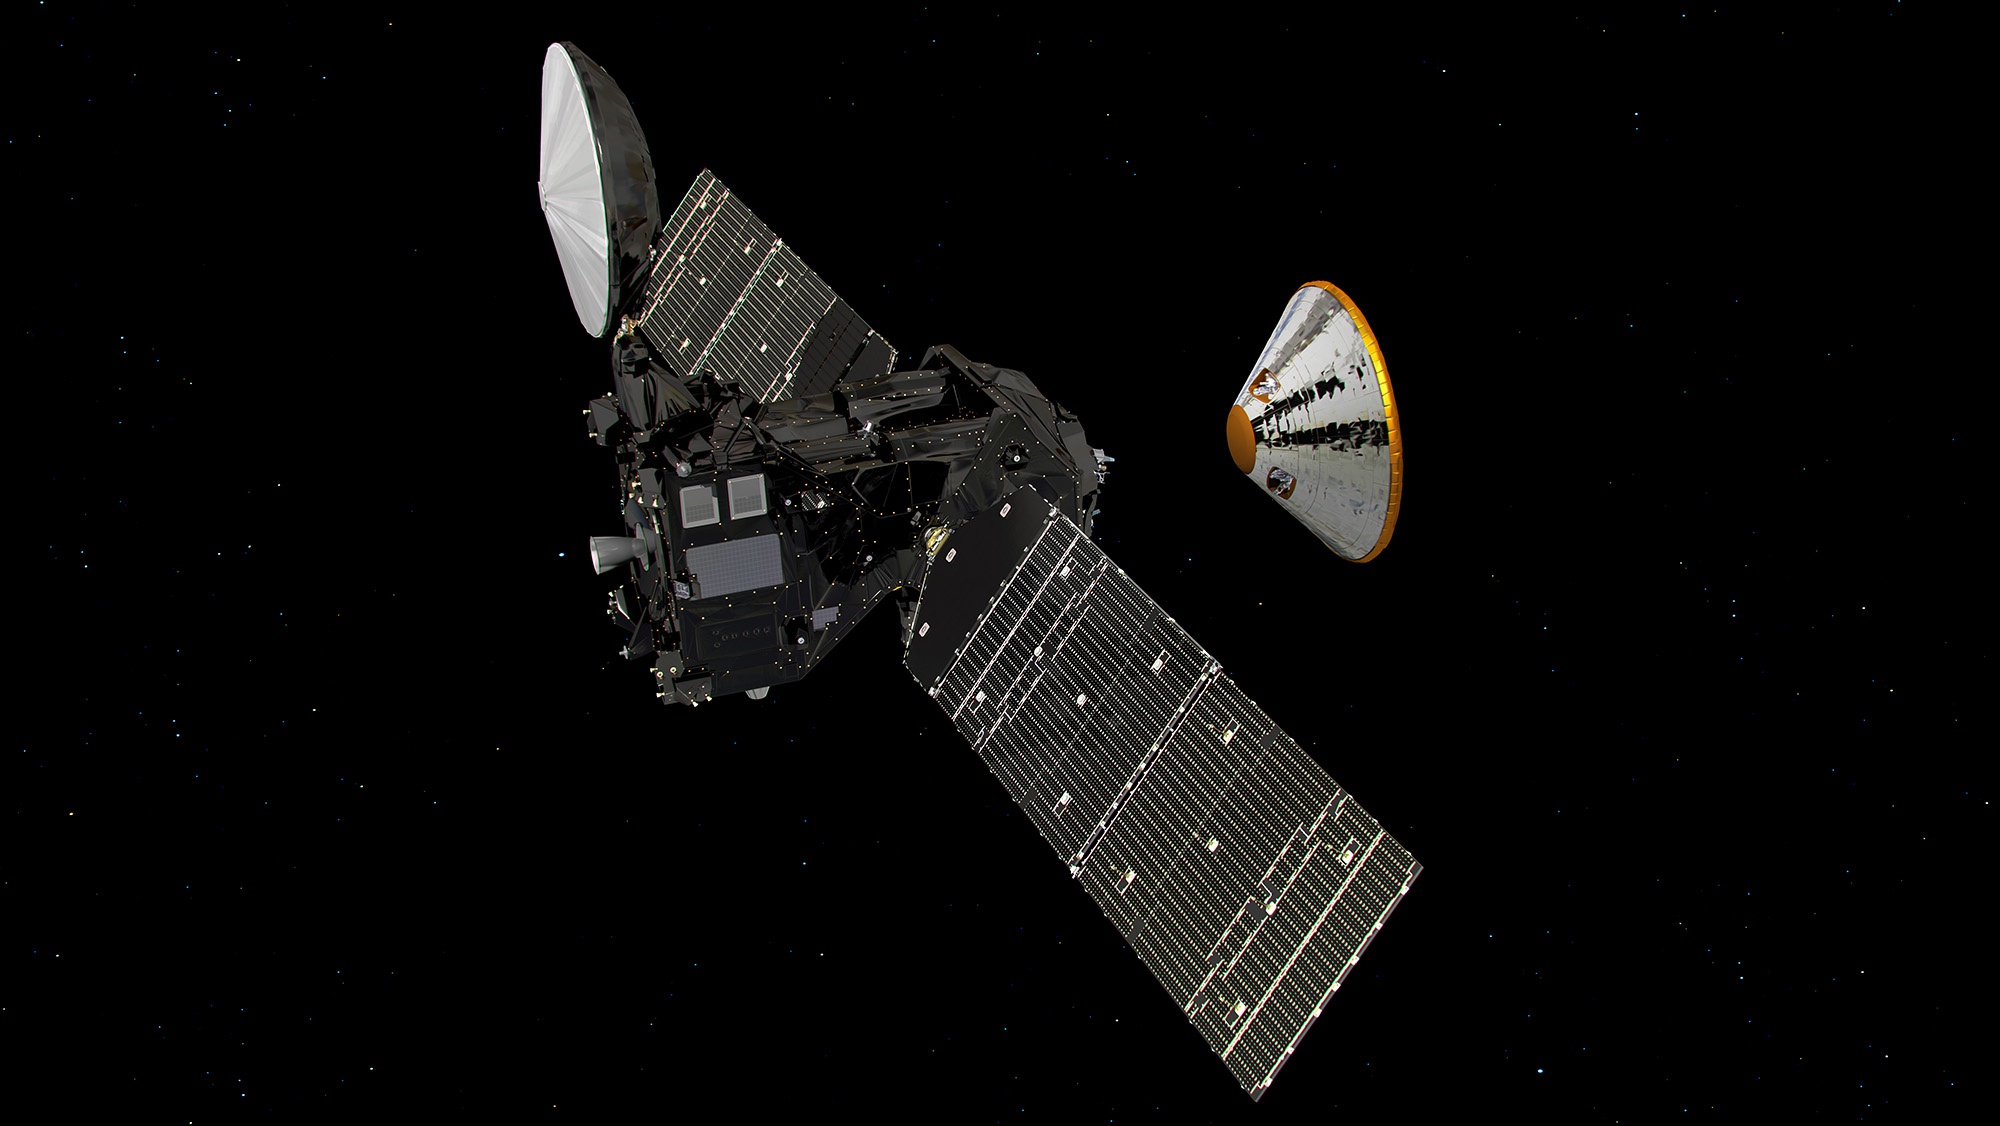 Самый большой космический аппарат. ЭКЗОМАРС космический аппарат. Космический аппарат ЭКЗОМАРС 2016. Trace Gas Orbiter космический аппарат. Межпланетная станция миссии EXOMARS-2016.